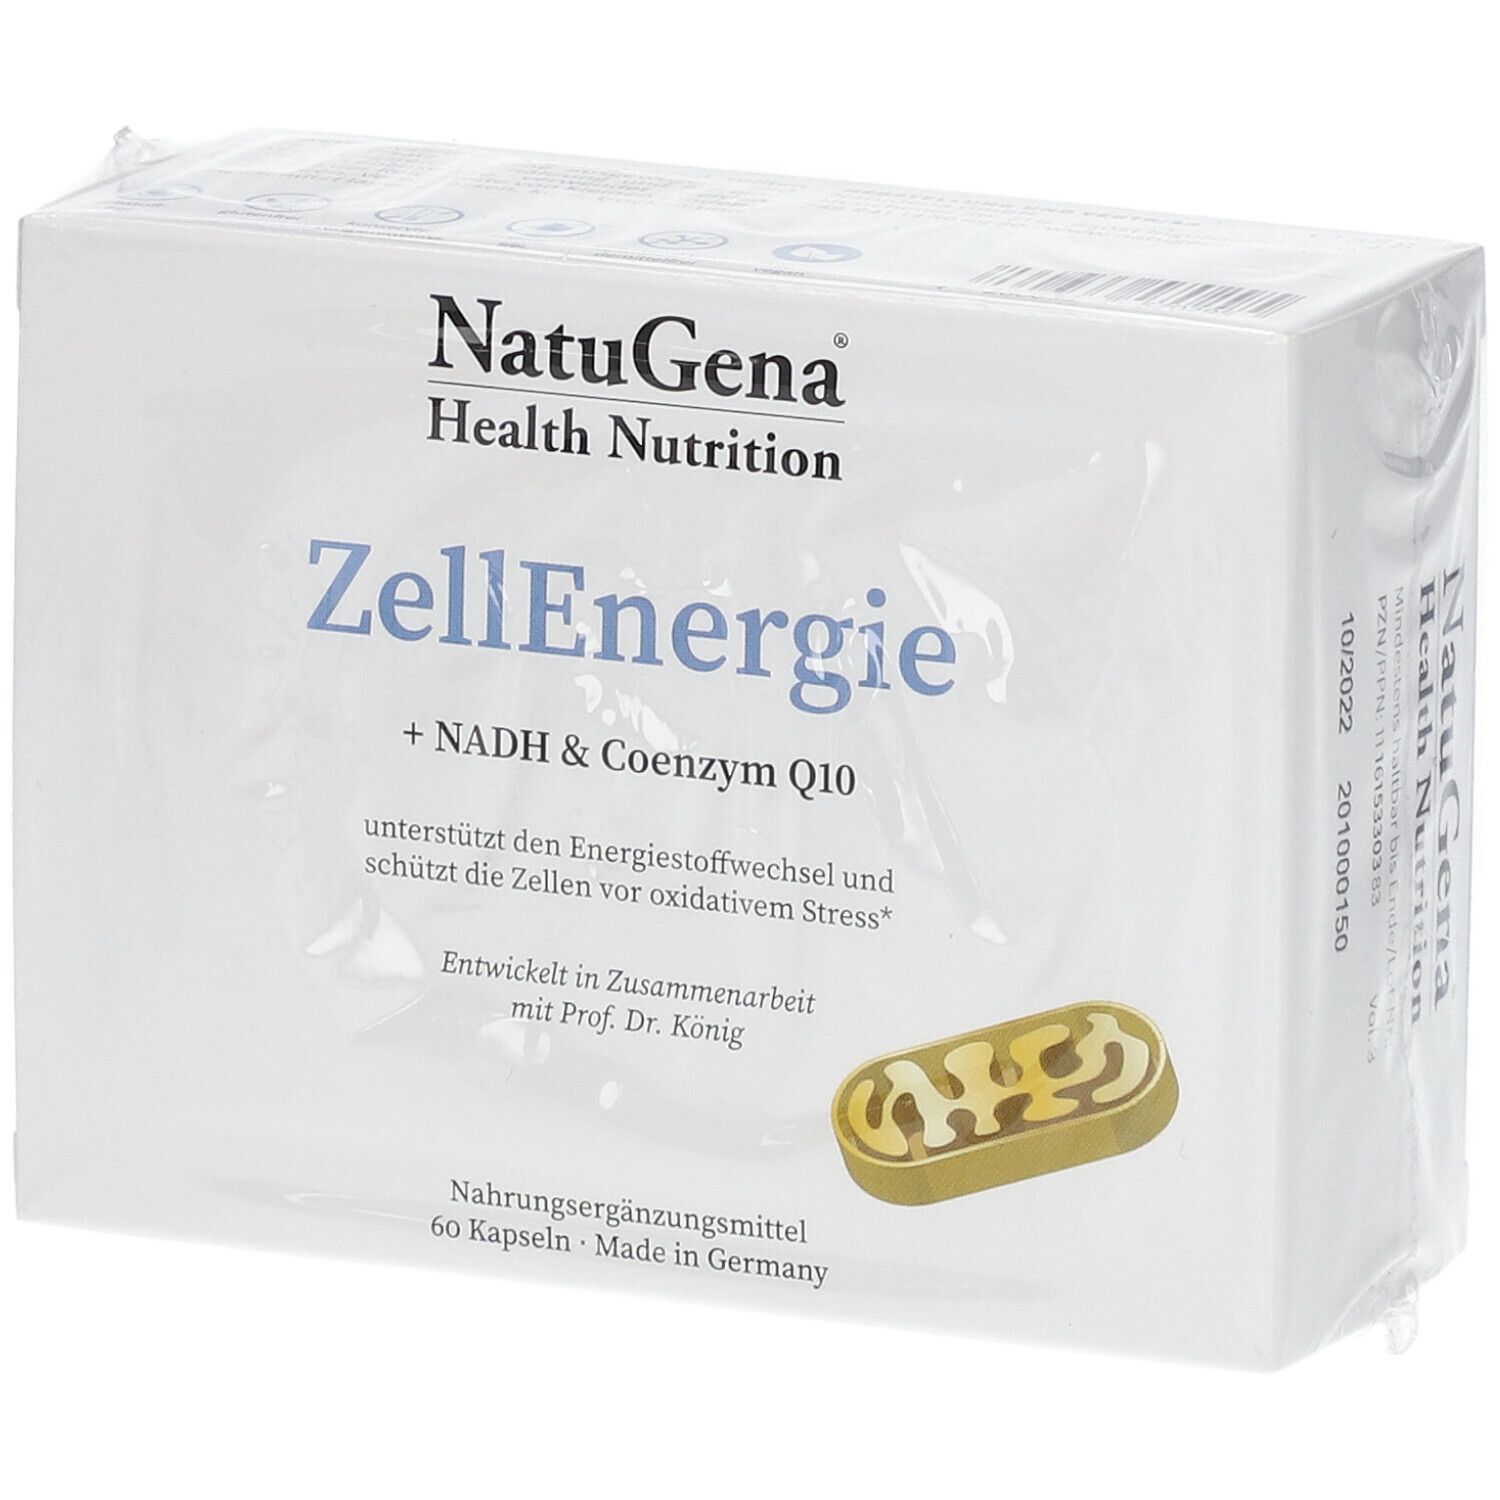 NatuGena® ZellEnergie